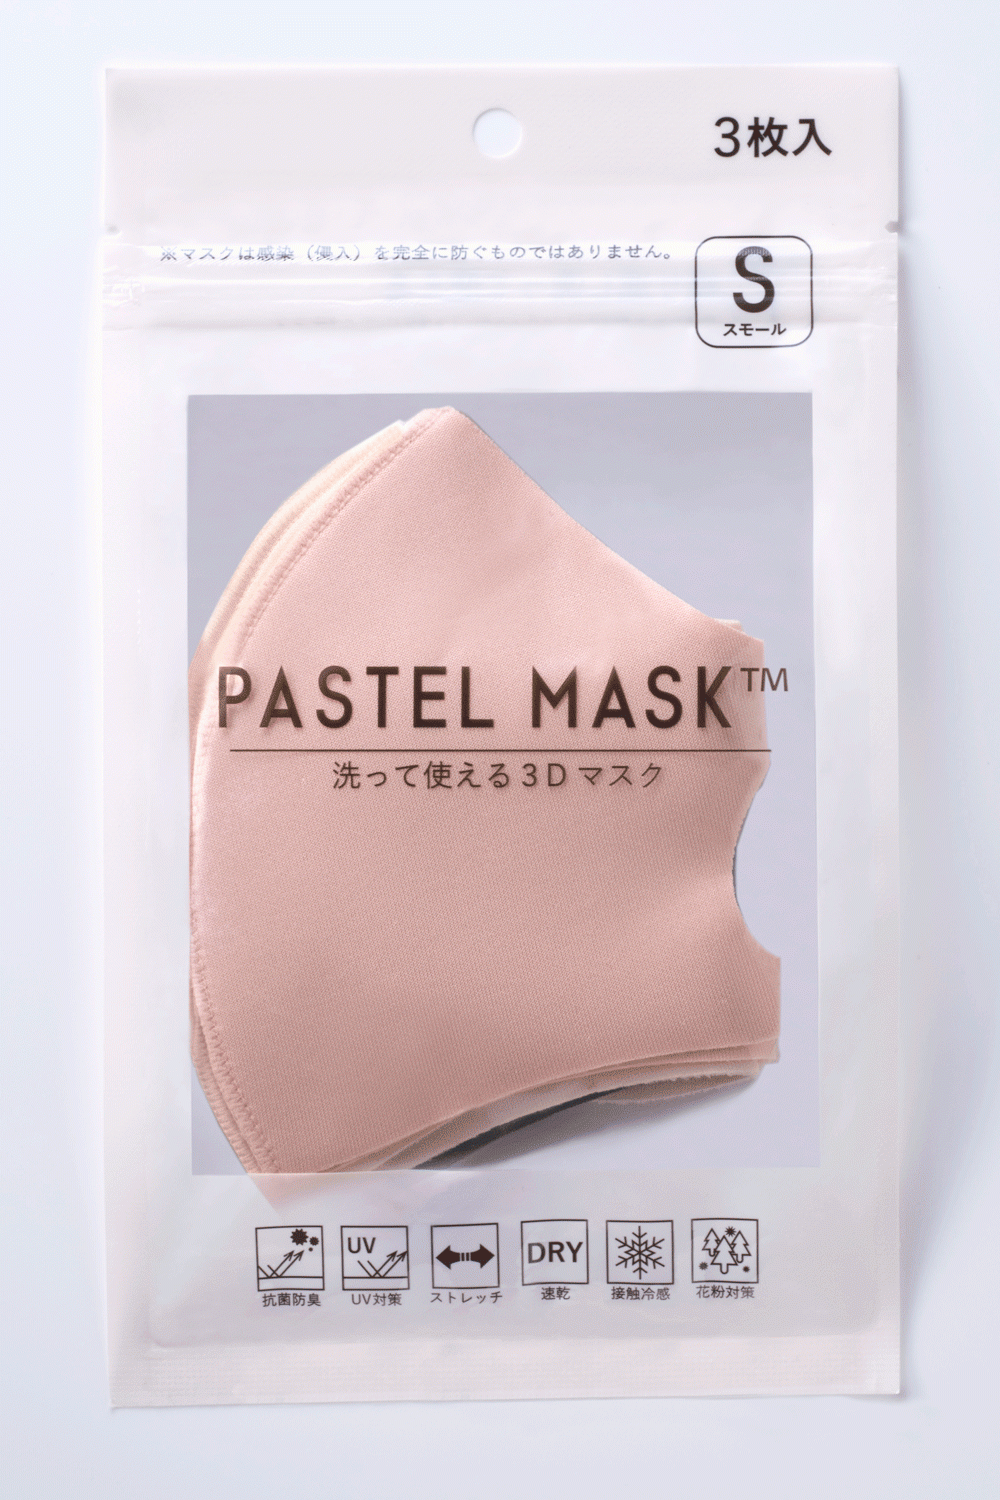 コロナ禍に発売5か月で累計販売4 000万枚突破 洗えるマスク Pastel Mask パステルマスク 豊富なカラー とサイズ ３d構造の快適さで大ヒット クロスプラス株式会社のプレスリリース